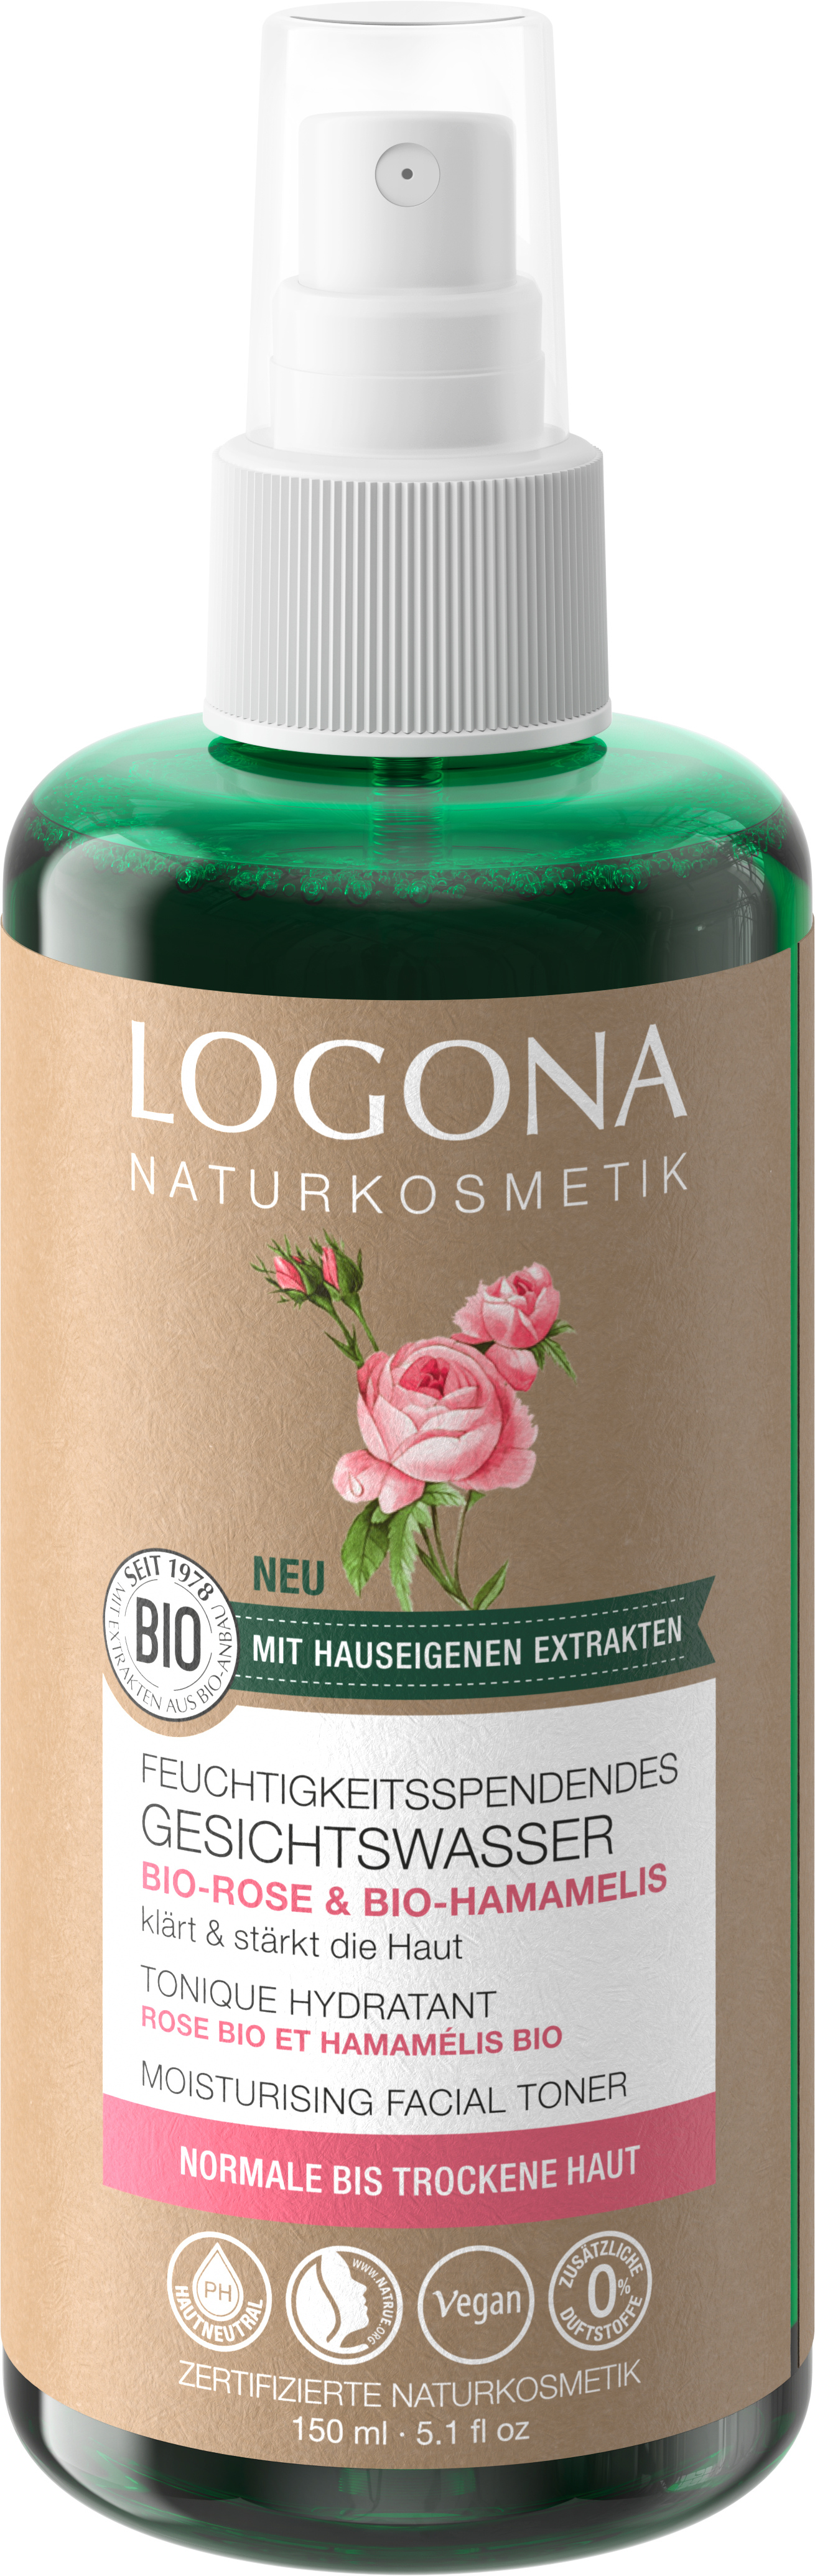 Naturkosmetik LOGONA & Gesichtswasser Bio-Rose Feuchtigkeitsspendendes Bio-Hamamelis |